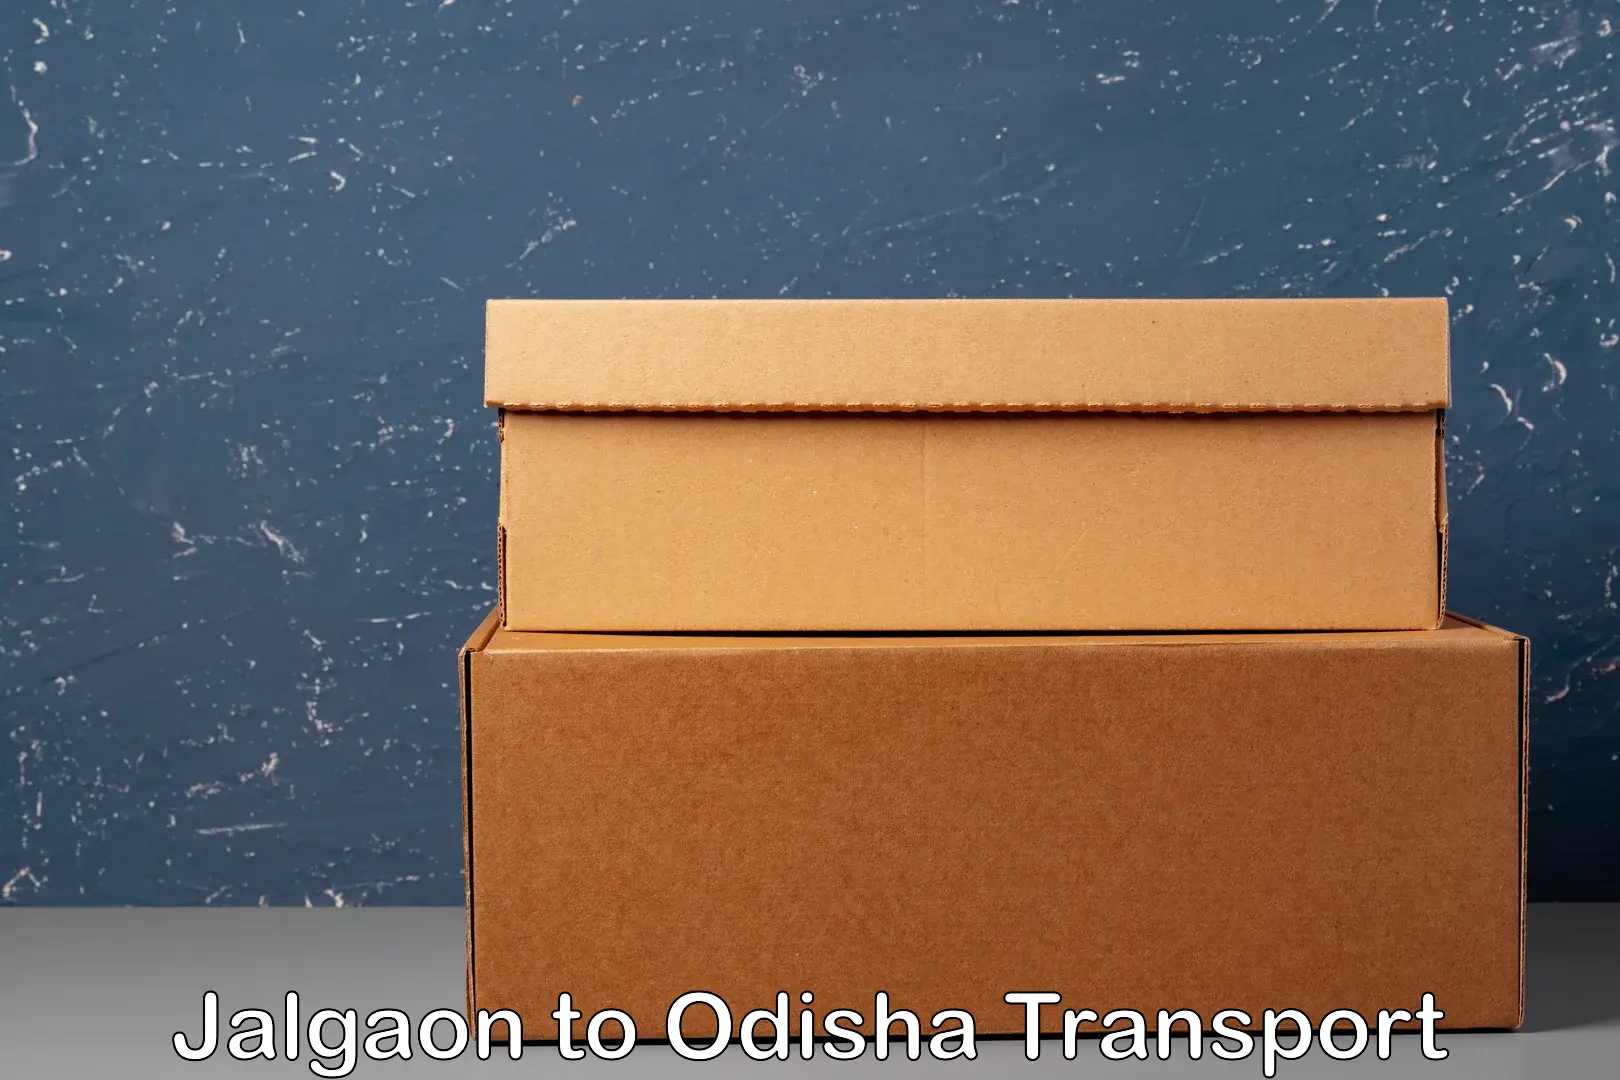 Bike transport service Jalgaon to Odisha